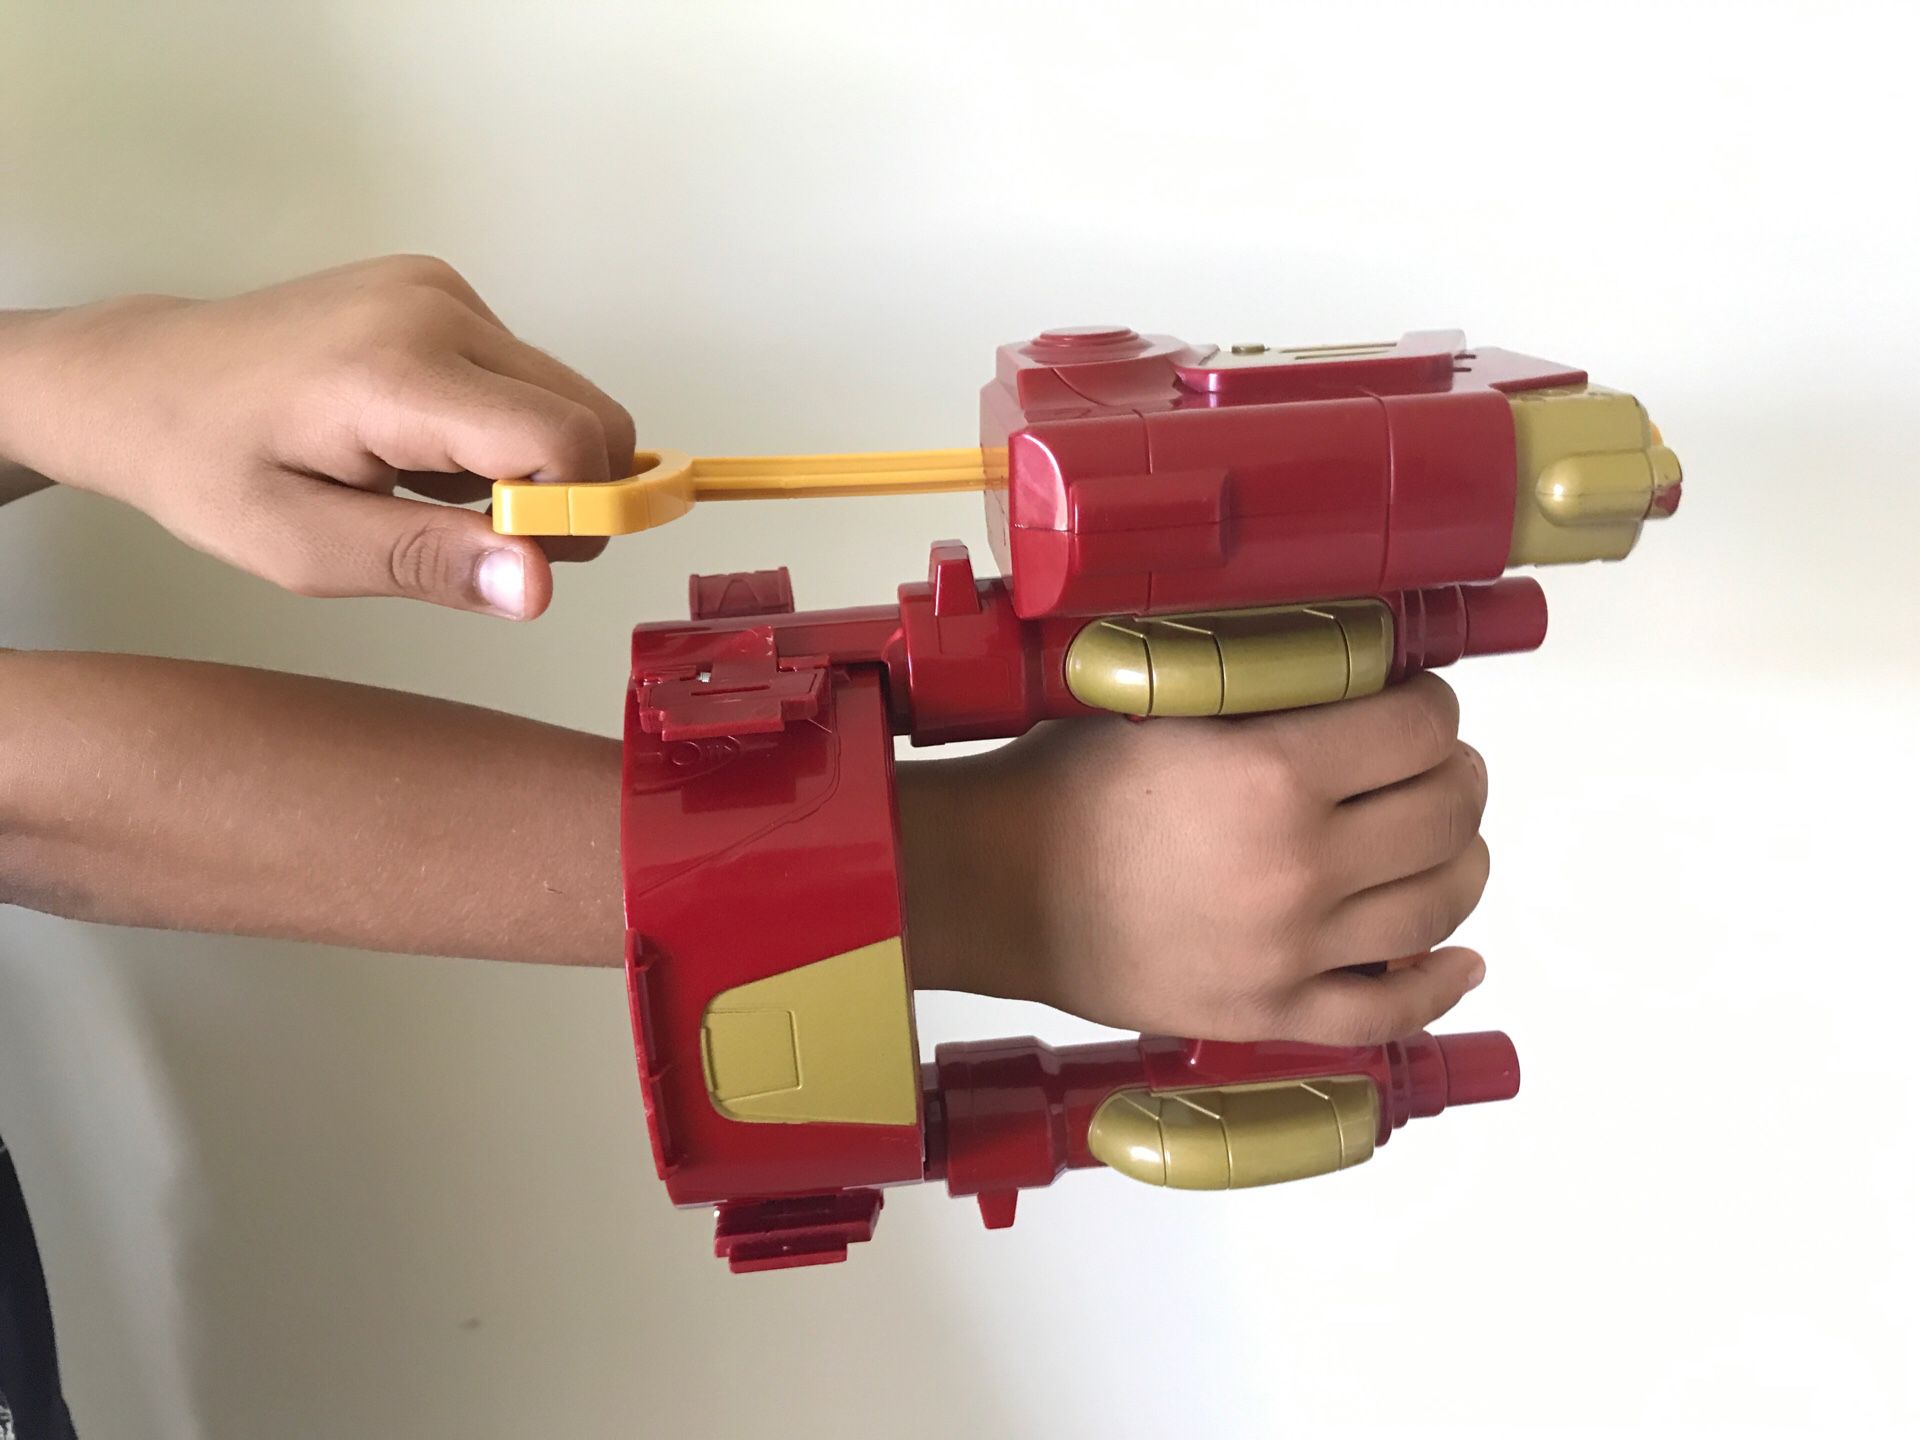 Iron man toy hand gun